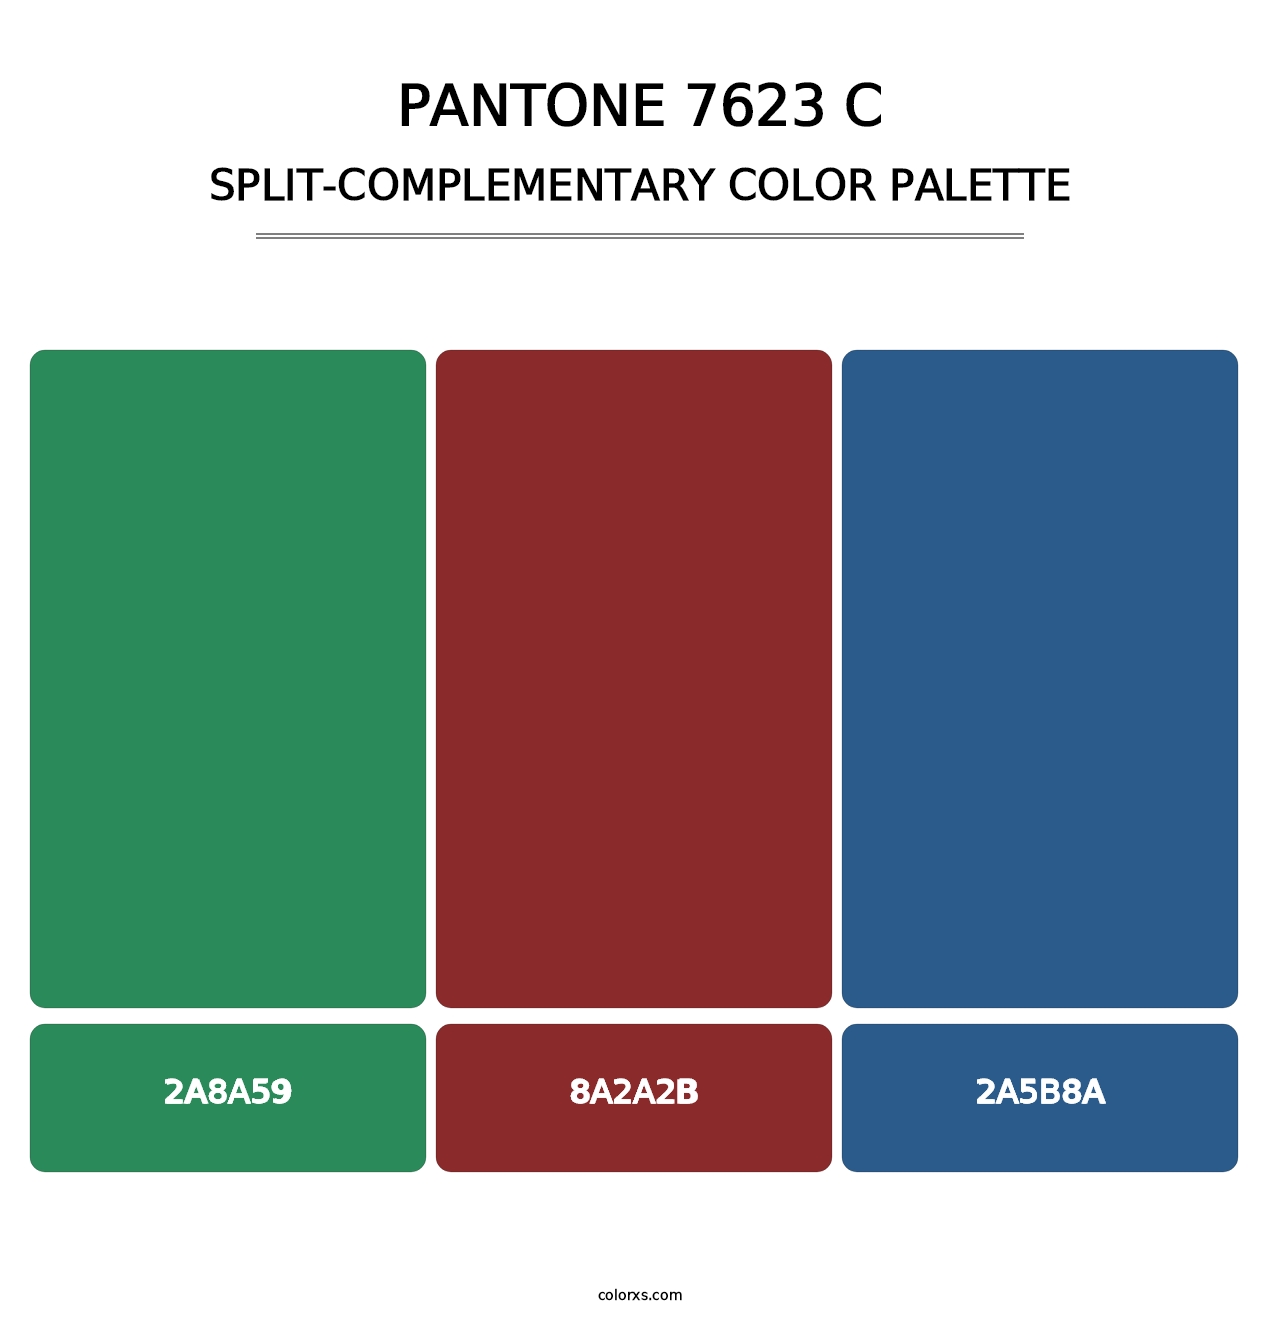 PANTONE 7623 C - Split-Complementary Color Palette